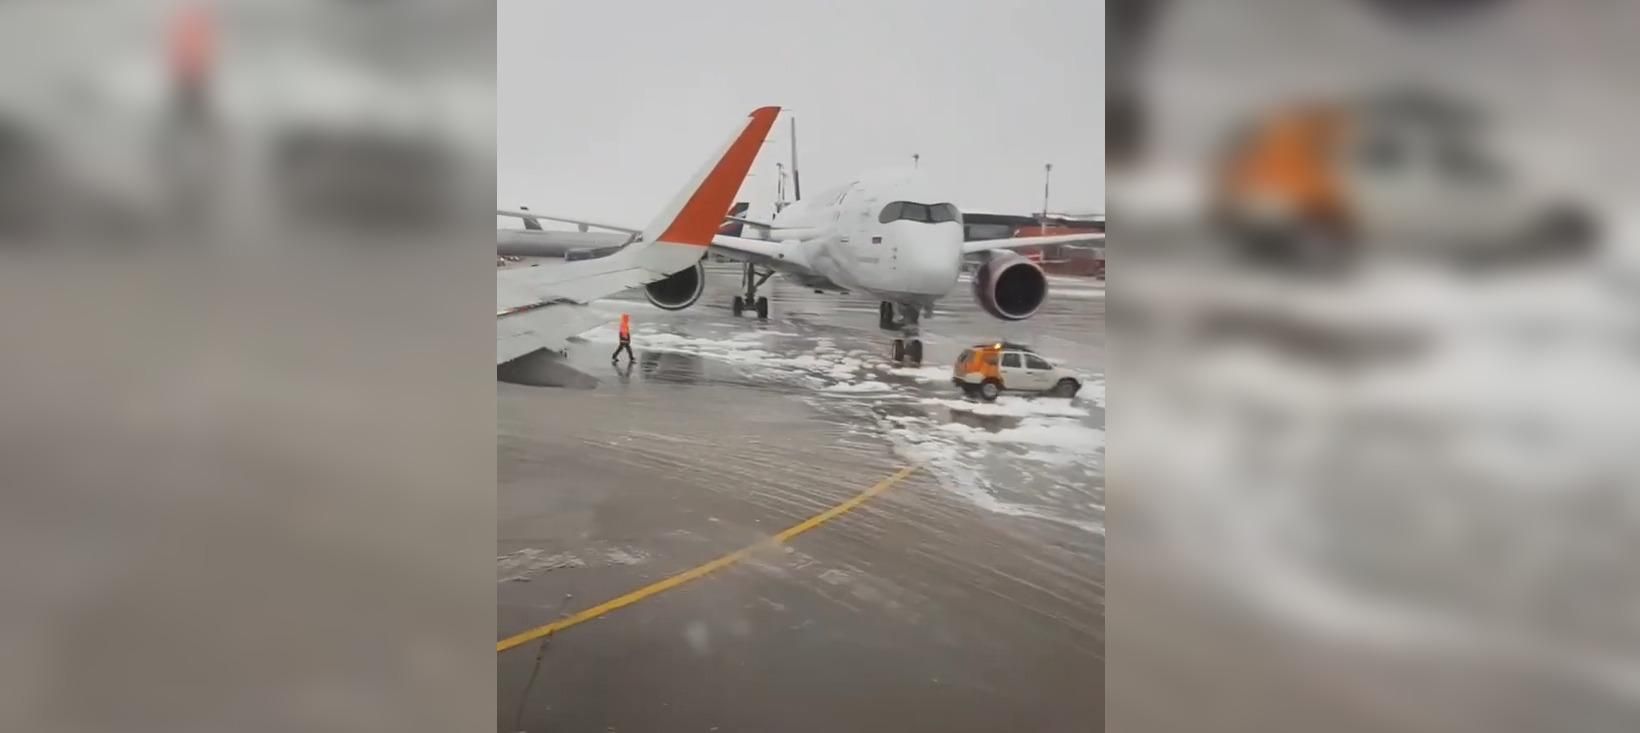 В московском аэропорту "Шереметьево" самолет столкнулся с техническим транспортом: видео аварии